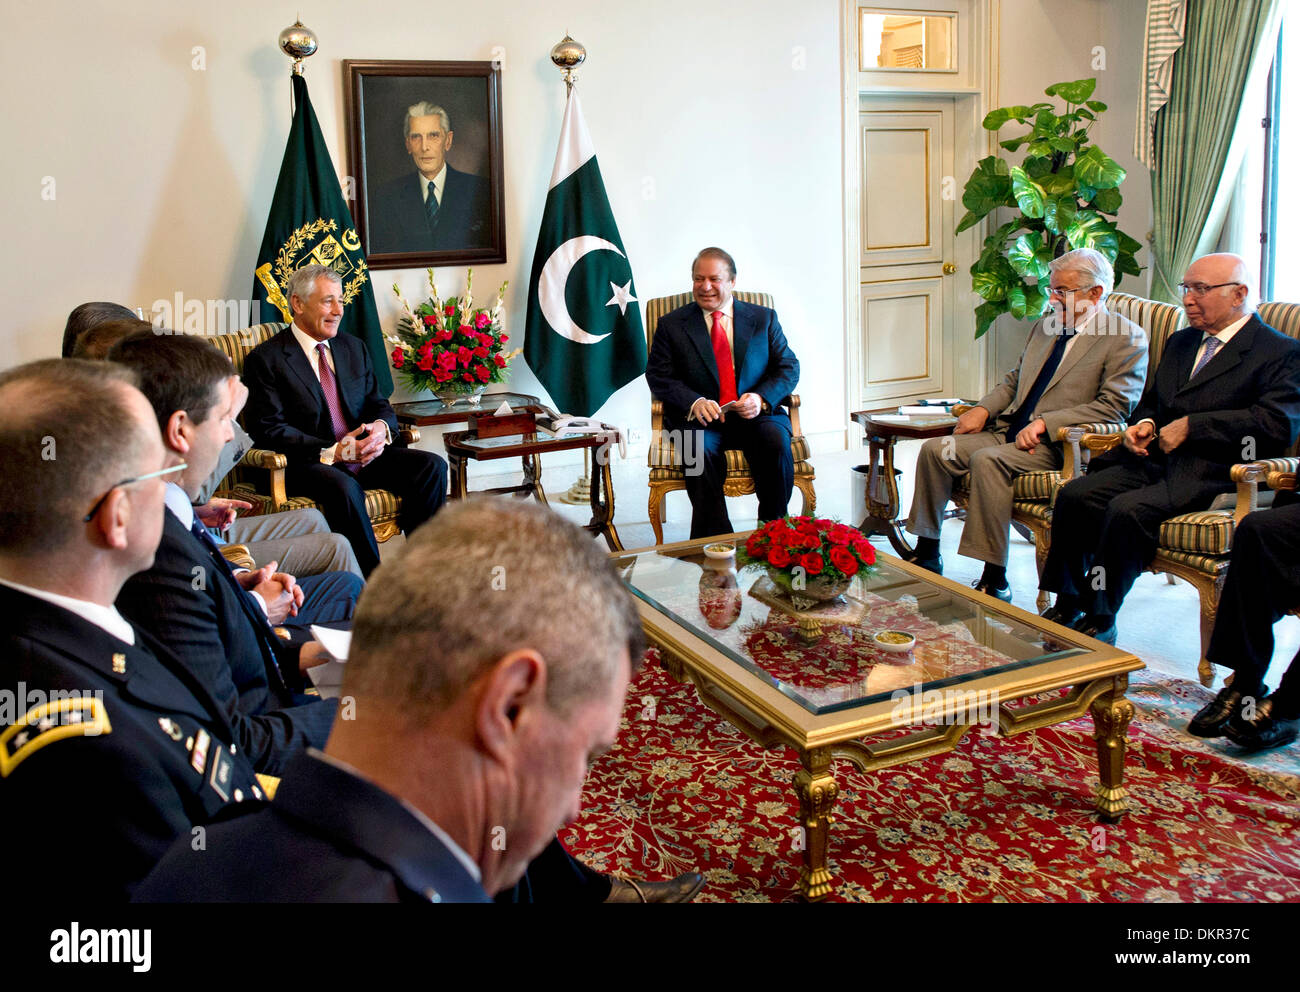 El Secretario de Defensa de EE.UU Chuck Hagel se reúne con el Primer Ministro paquistaní, Nawaz Sharif, 9 de diciembre de 2013 en Islamabad, Pakistán. Foto de stock